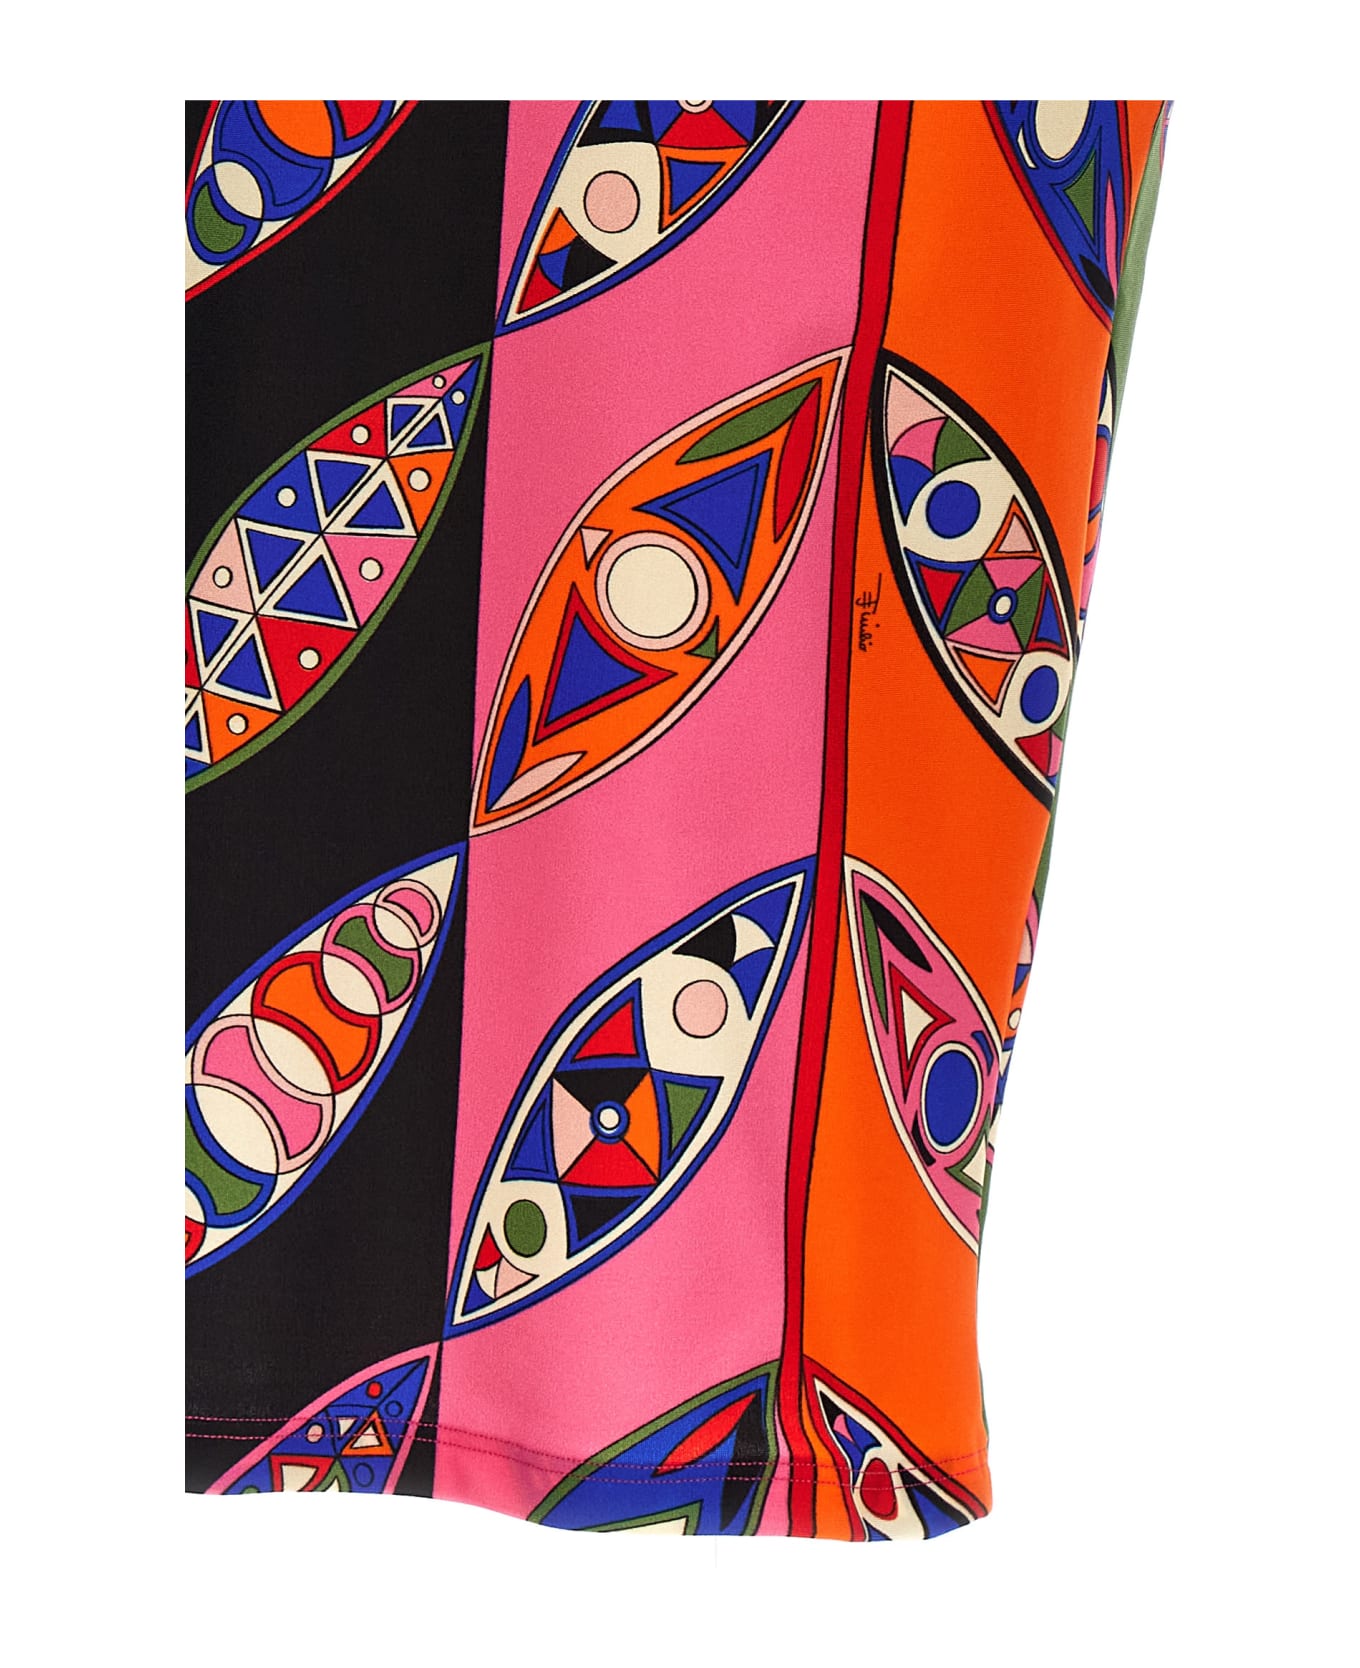 Pucci 'girandole' Print Skirt - Multicolor